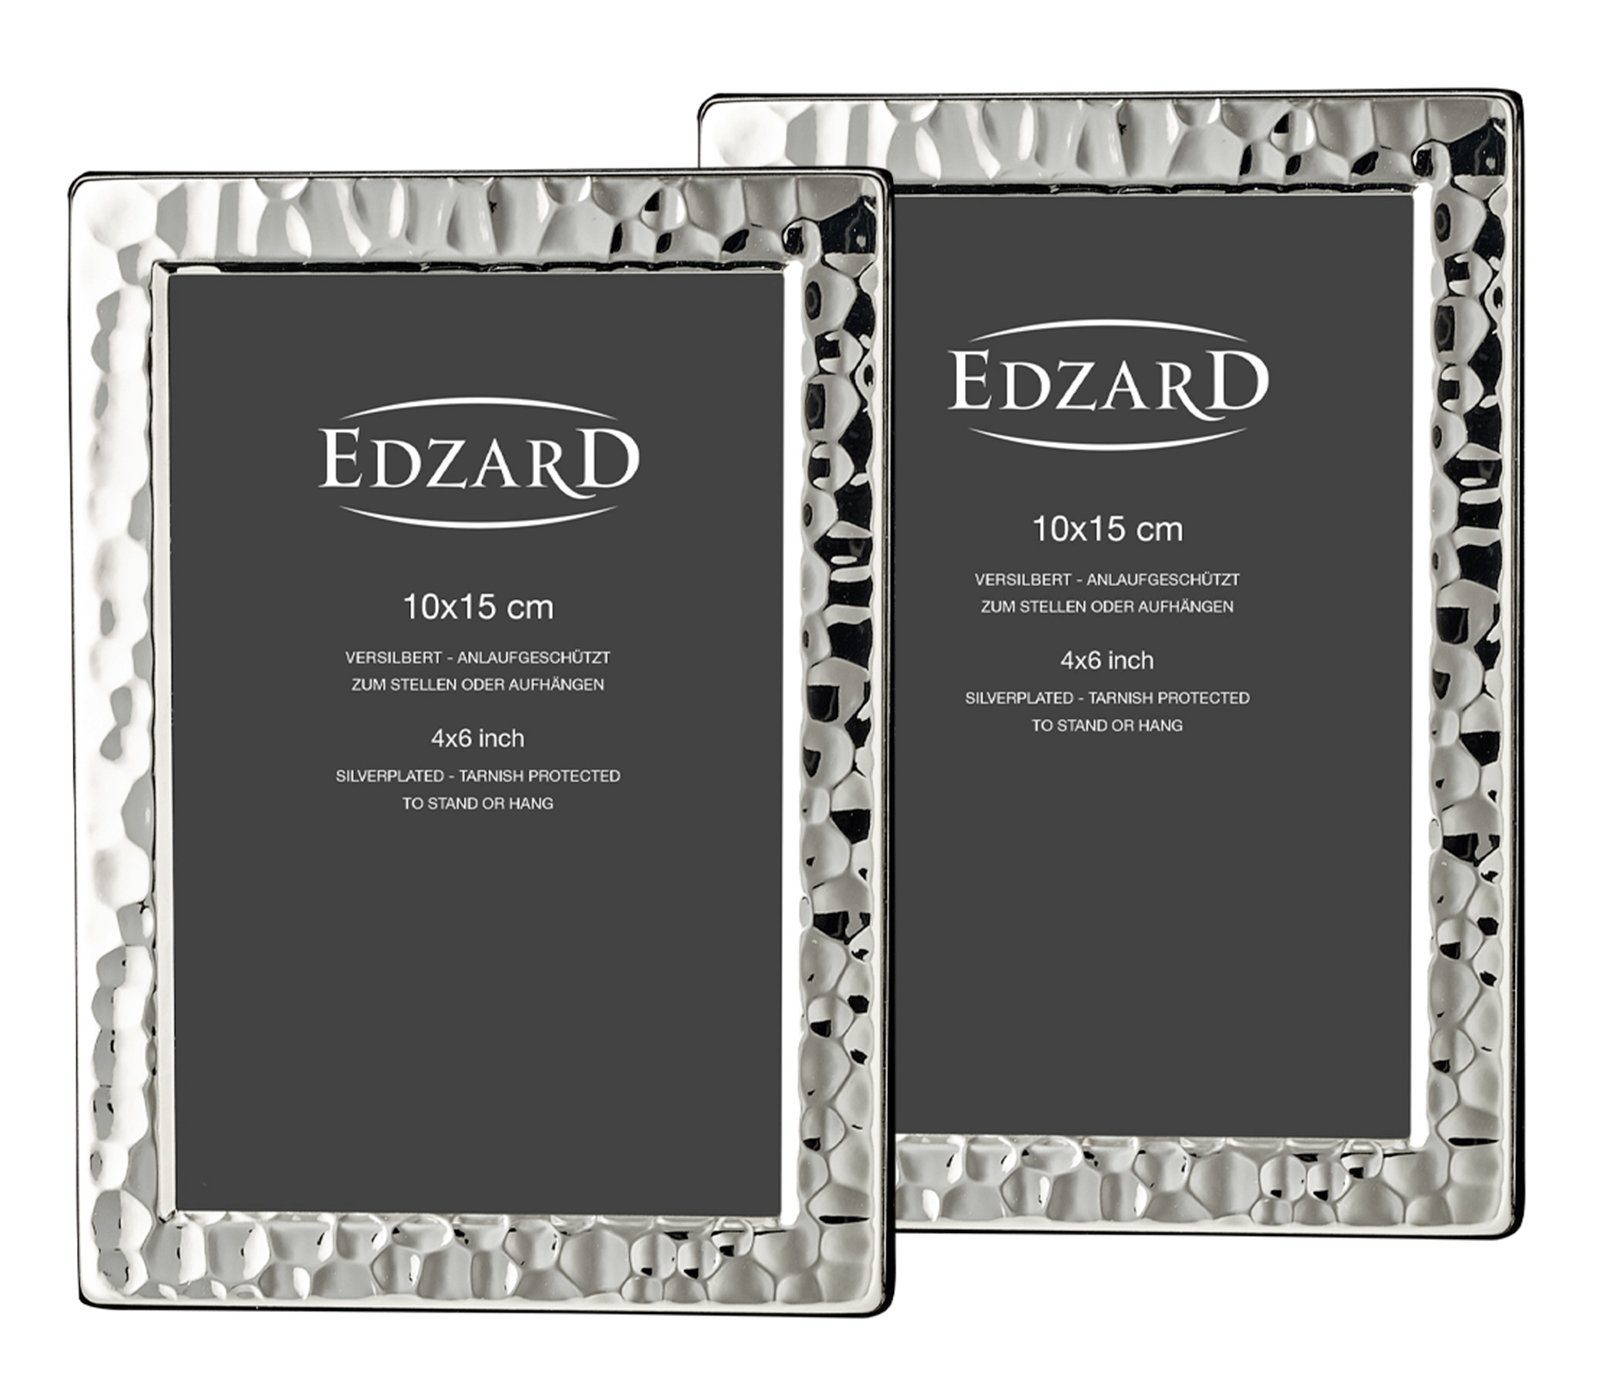 EDZARD Bilderrahmen, versilbert und anlaufgeschützt, 2er Set für 10x15 cm  Foto - Fotorahmen, Rahmen für Foto - zum Hinstellen und Aufhängen online  kaufen | OTTO